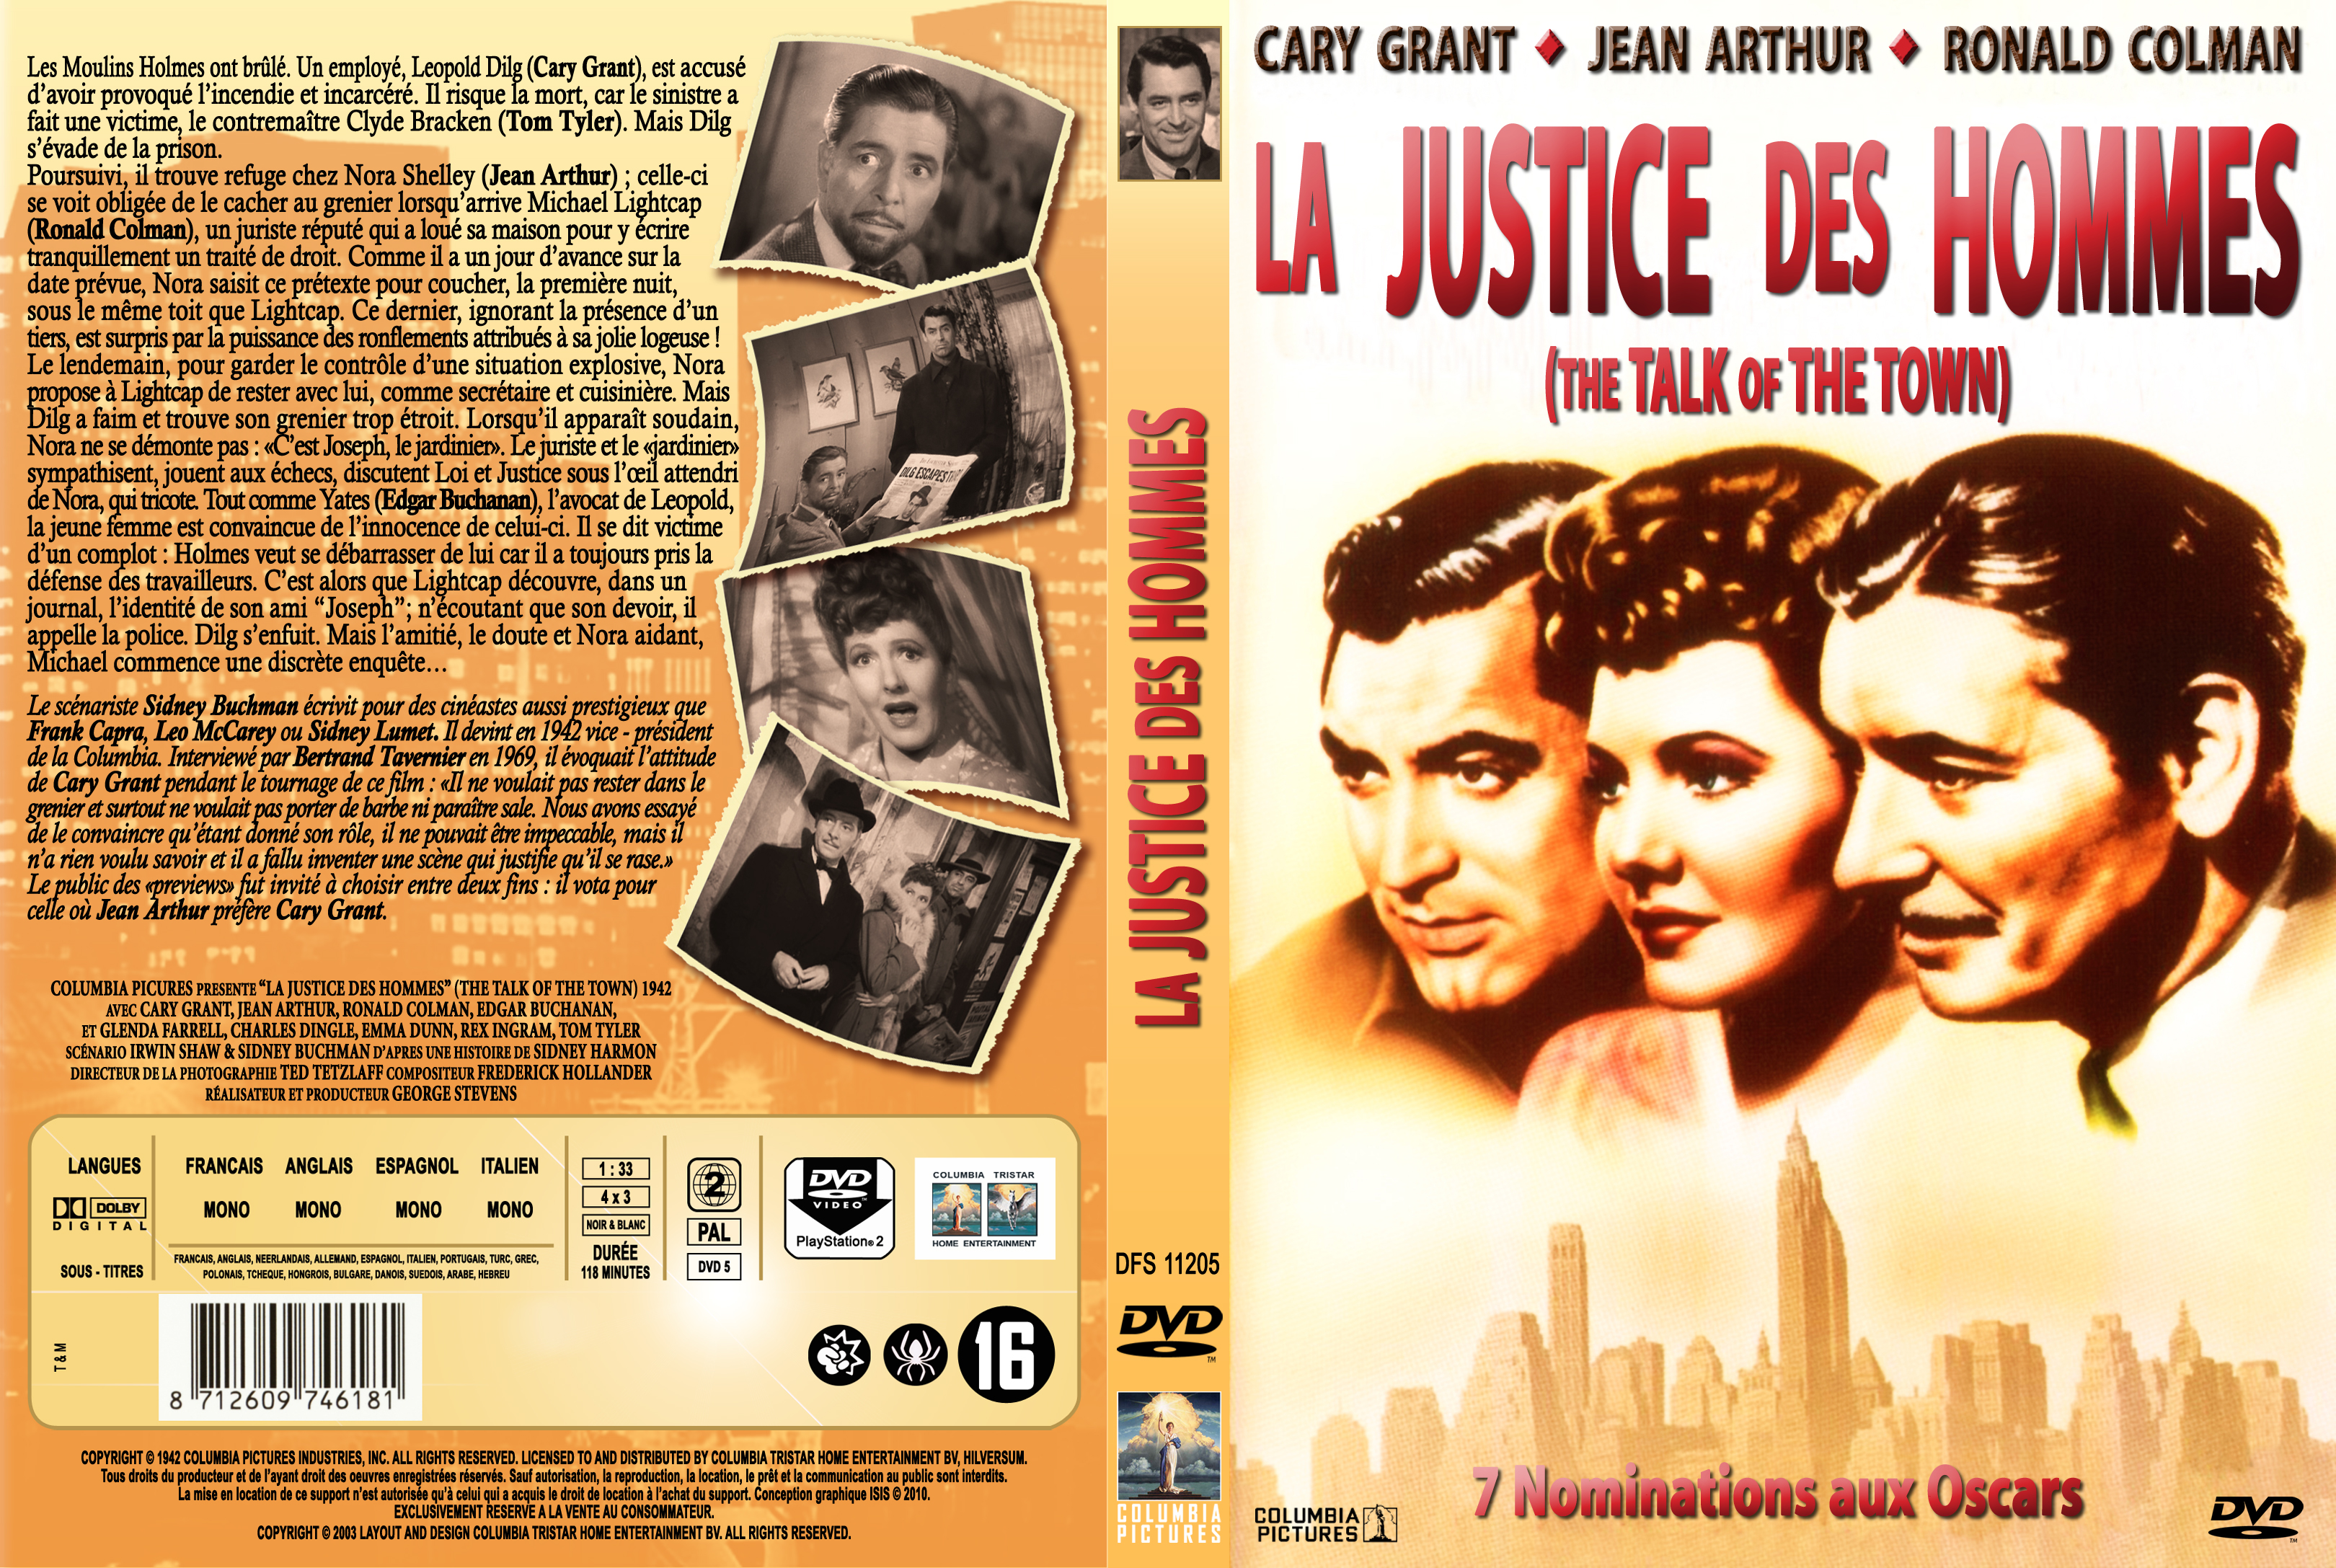 Jaquette DVD La justice des hommes custom